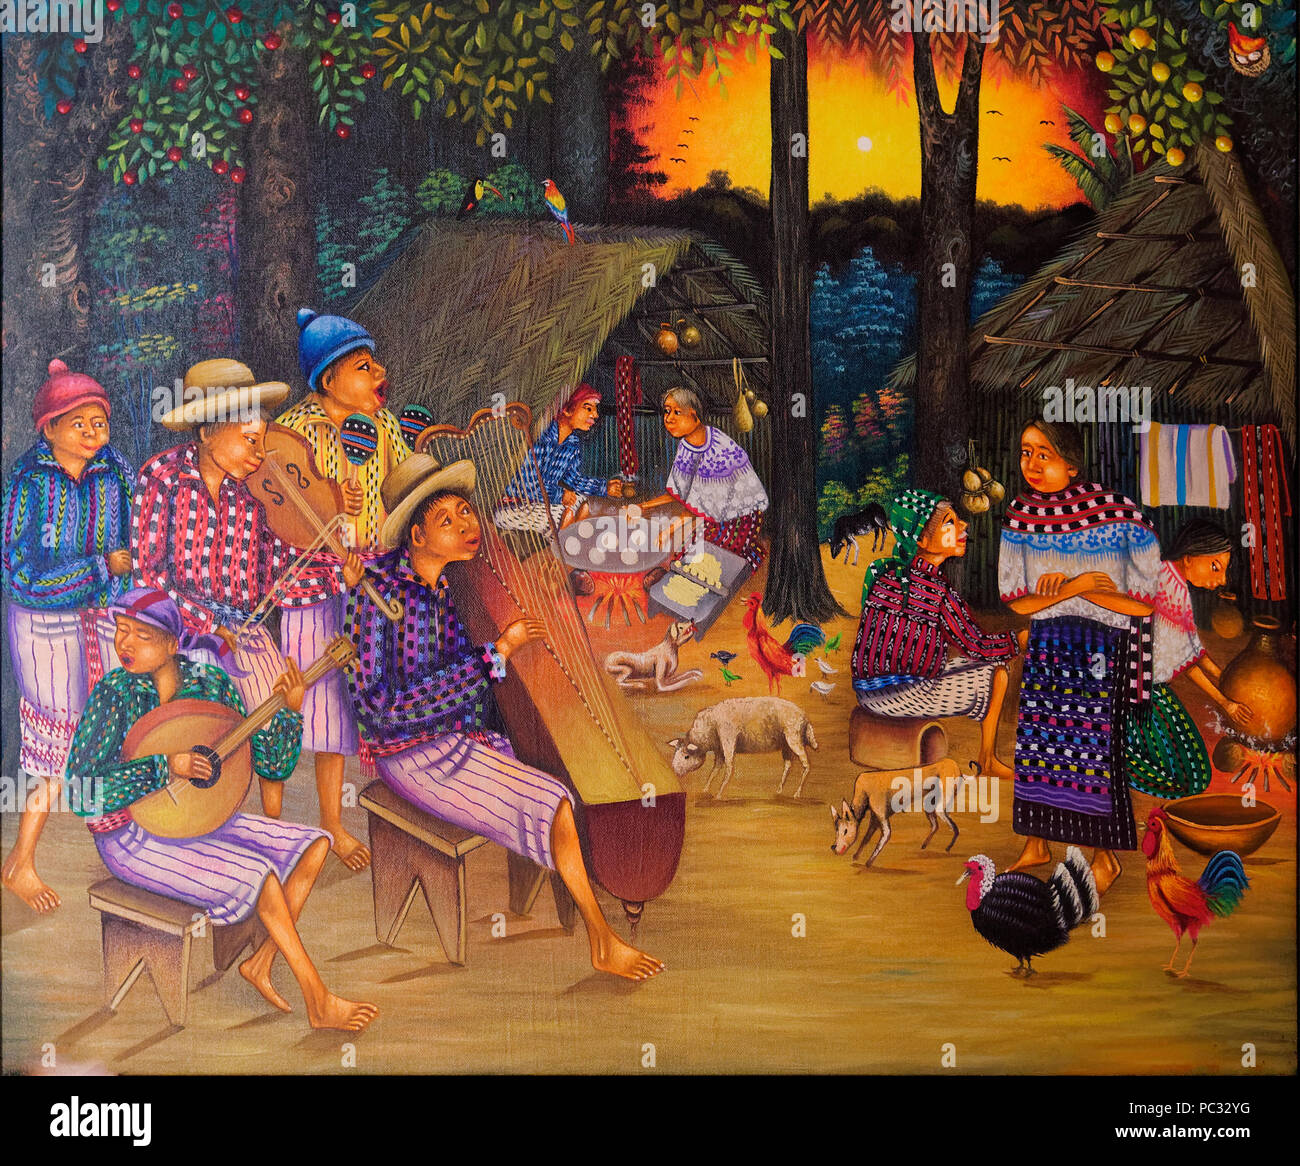 Pintura - arte indígena, Indios Sudamericanos, Perú Foto de stock